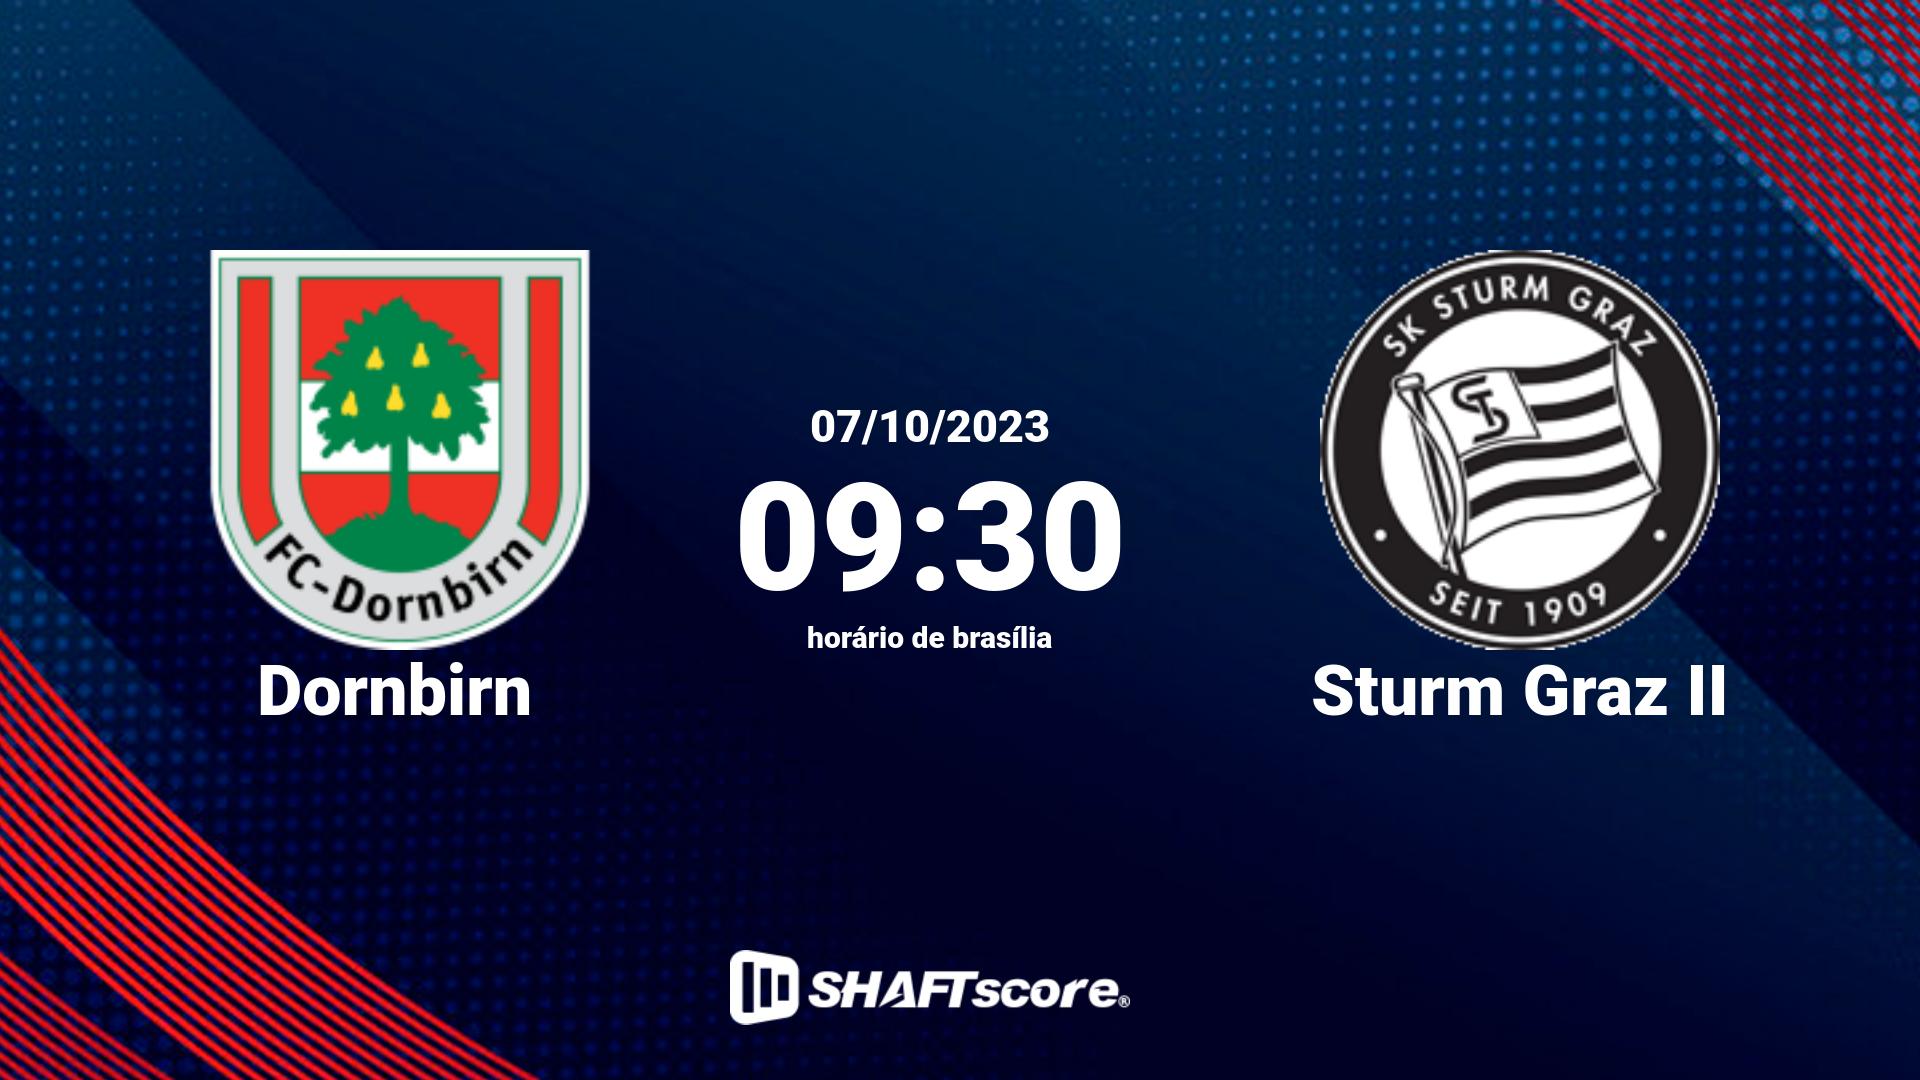 Estatísticas do jogo Dornbirn vs Sturm Graz II 07.10 09:30